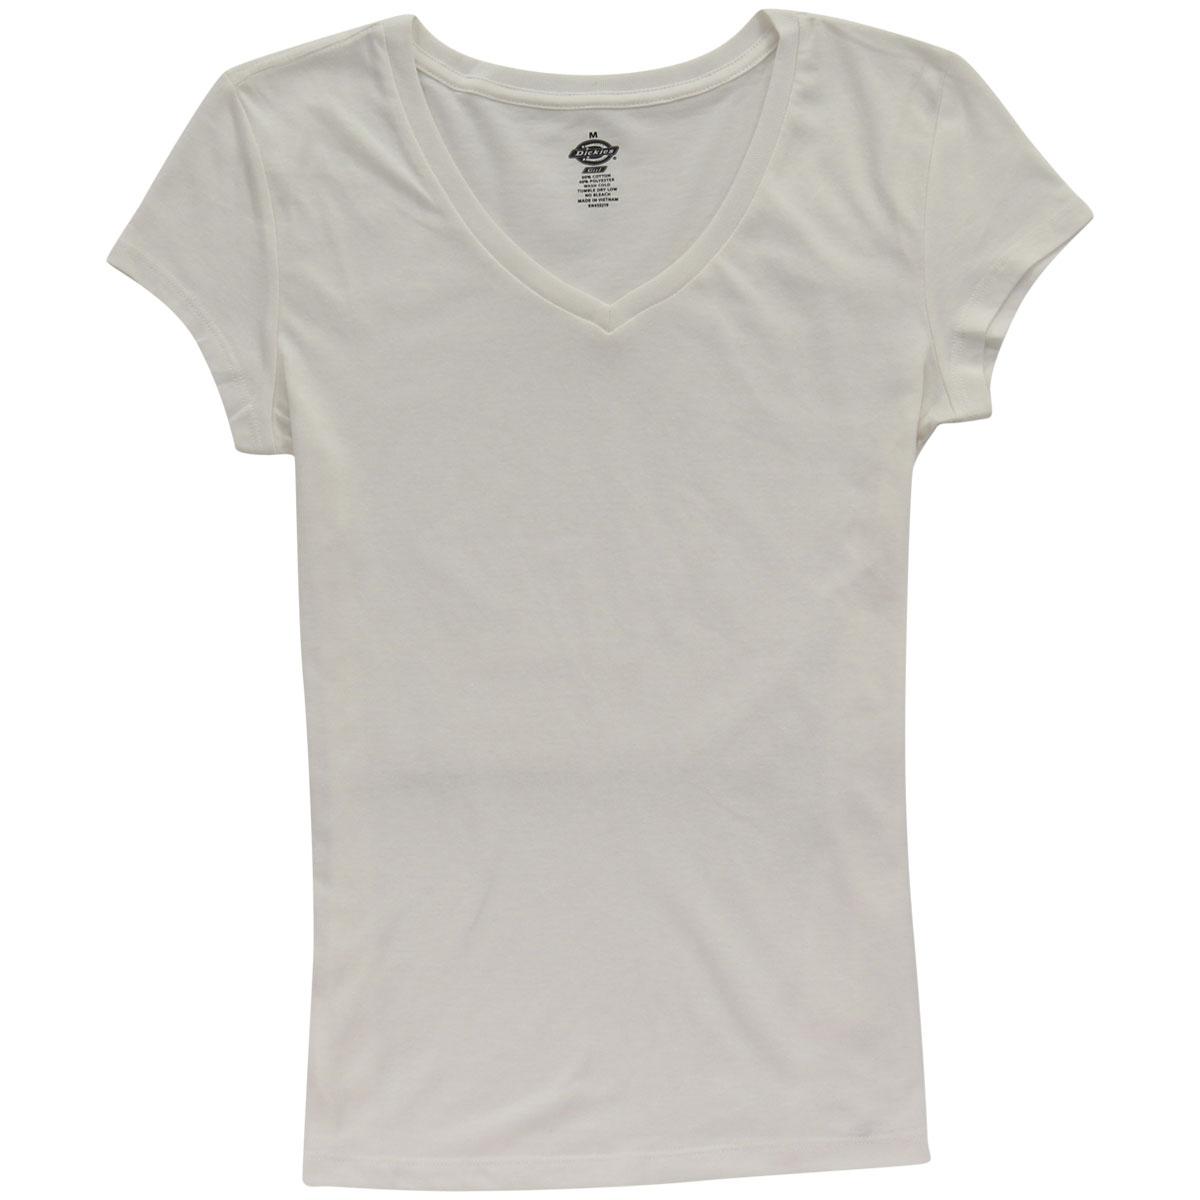 Dickies Girl Junior's Slim Fit Short Sleeve V Neck T Shirt - White - Large